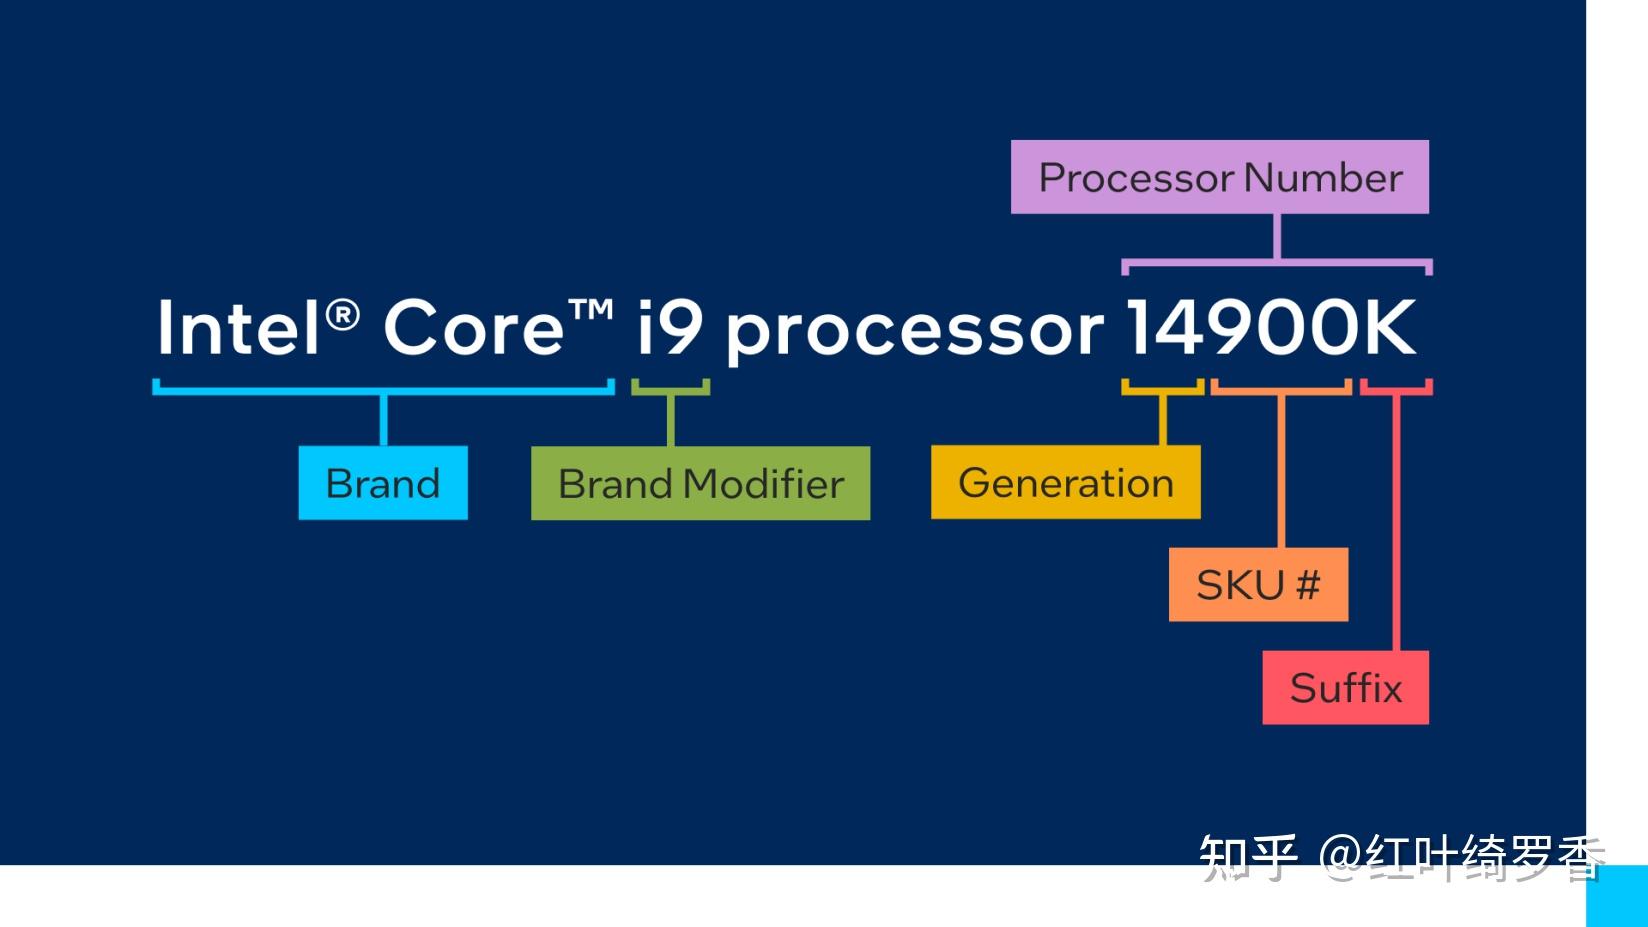 奔腾G4600 奔腾G4600处理器性能分析及市场定位：详细对比竞品特性与应用领域  第8张